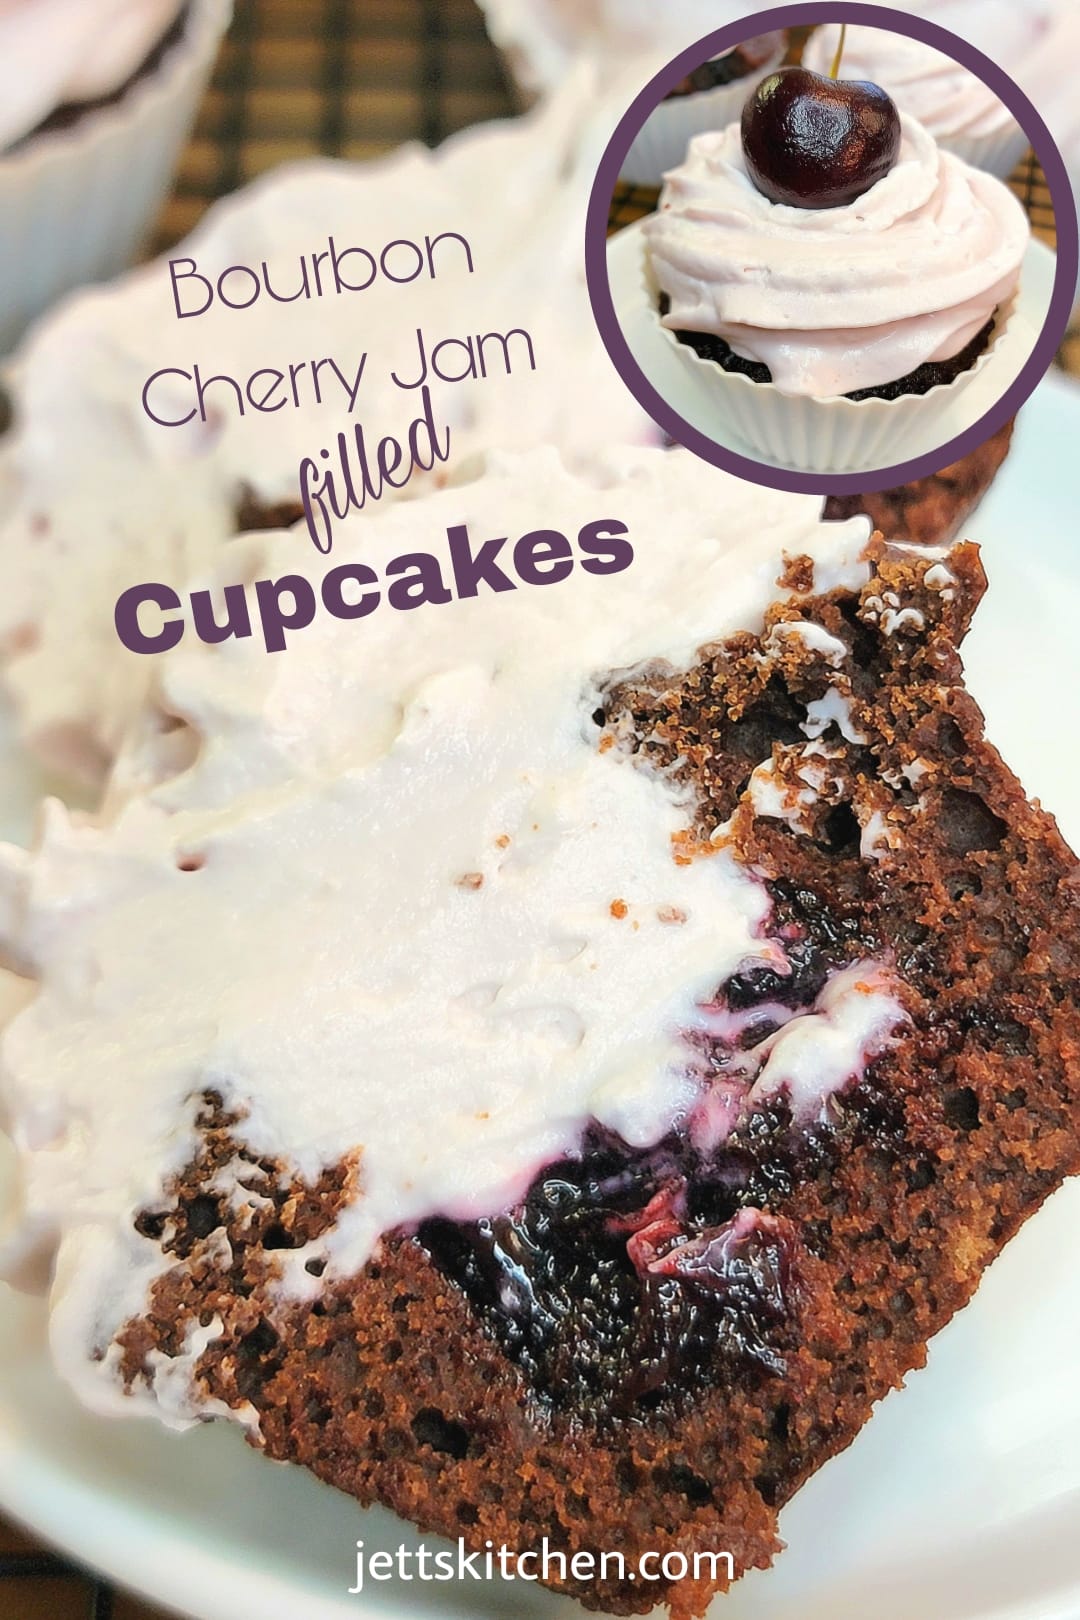 NIB Wilton Jumbo Cupcake Pan Fun to Bake and Decorate with a 1-Box Recipe